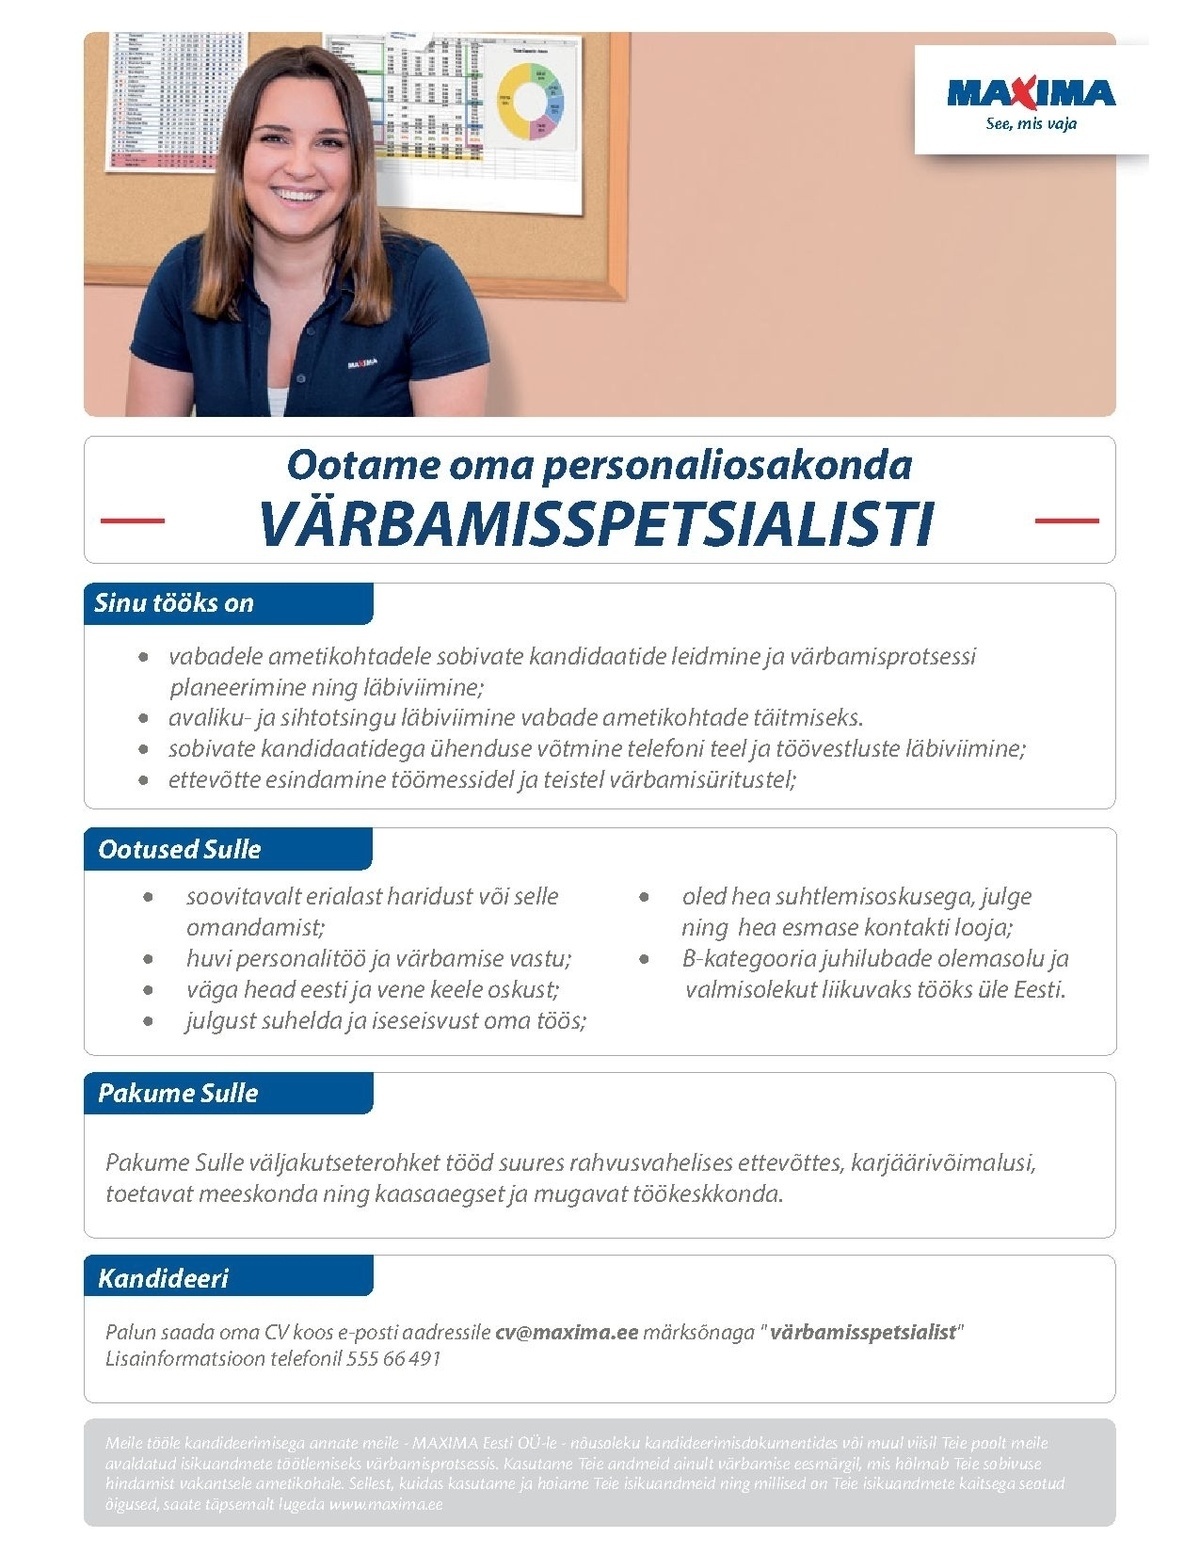 Maxima Eesti OÜ Värbamisspetsialist